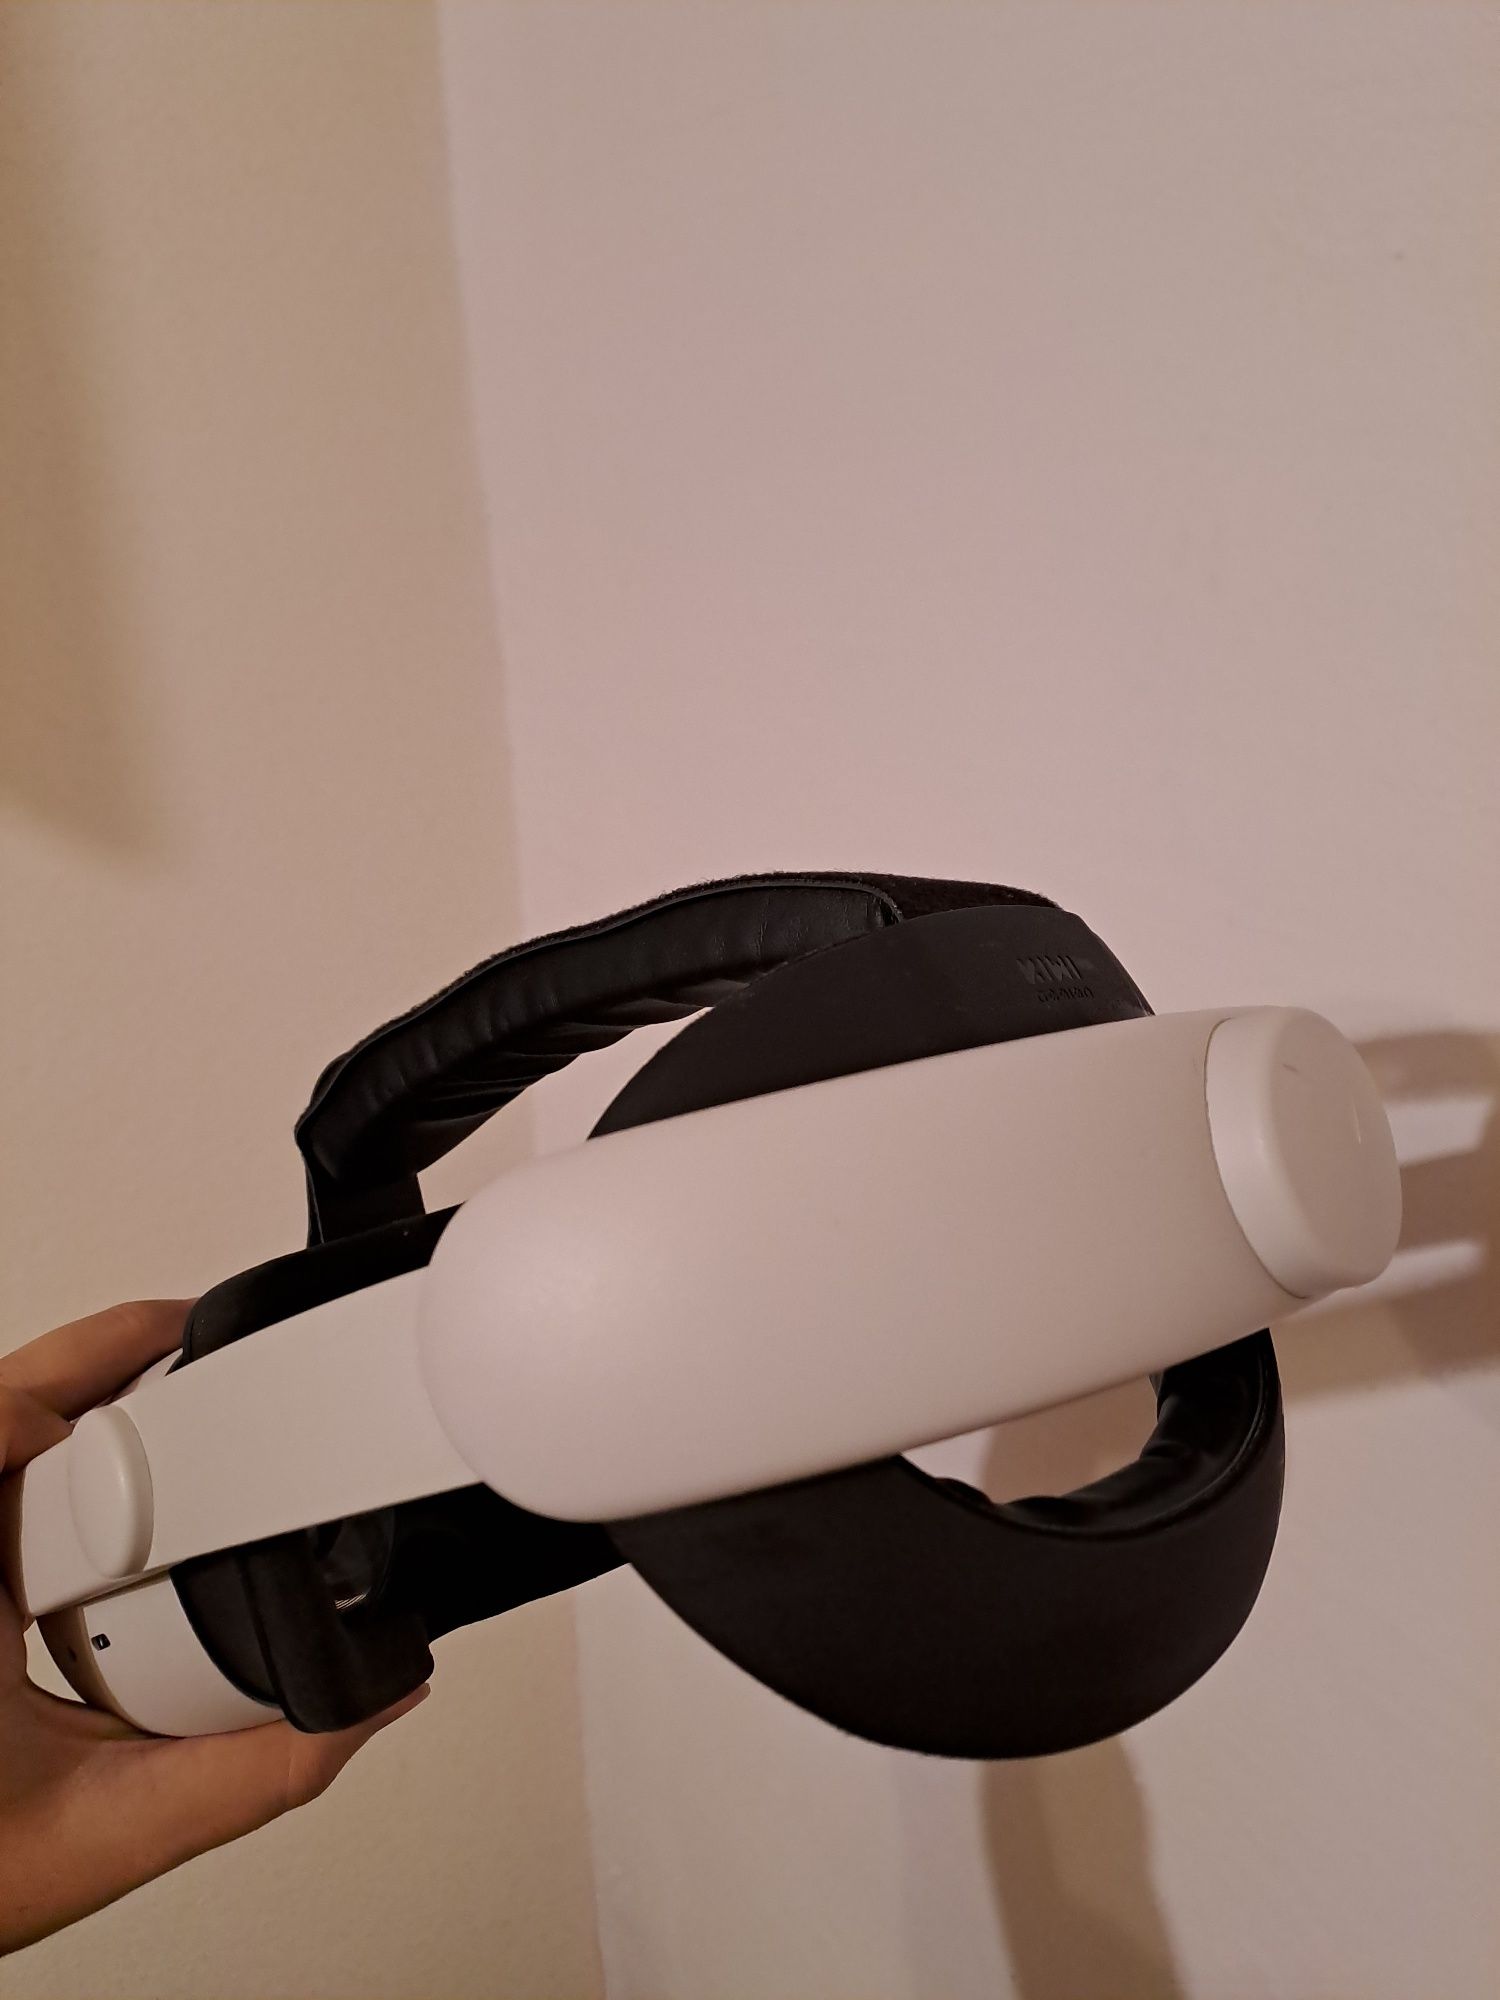 Oculus Quest 2 cu strap confortabil kiwi/cablu gen oculus link separat